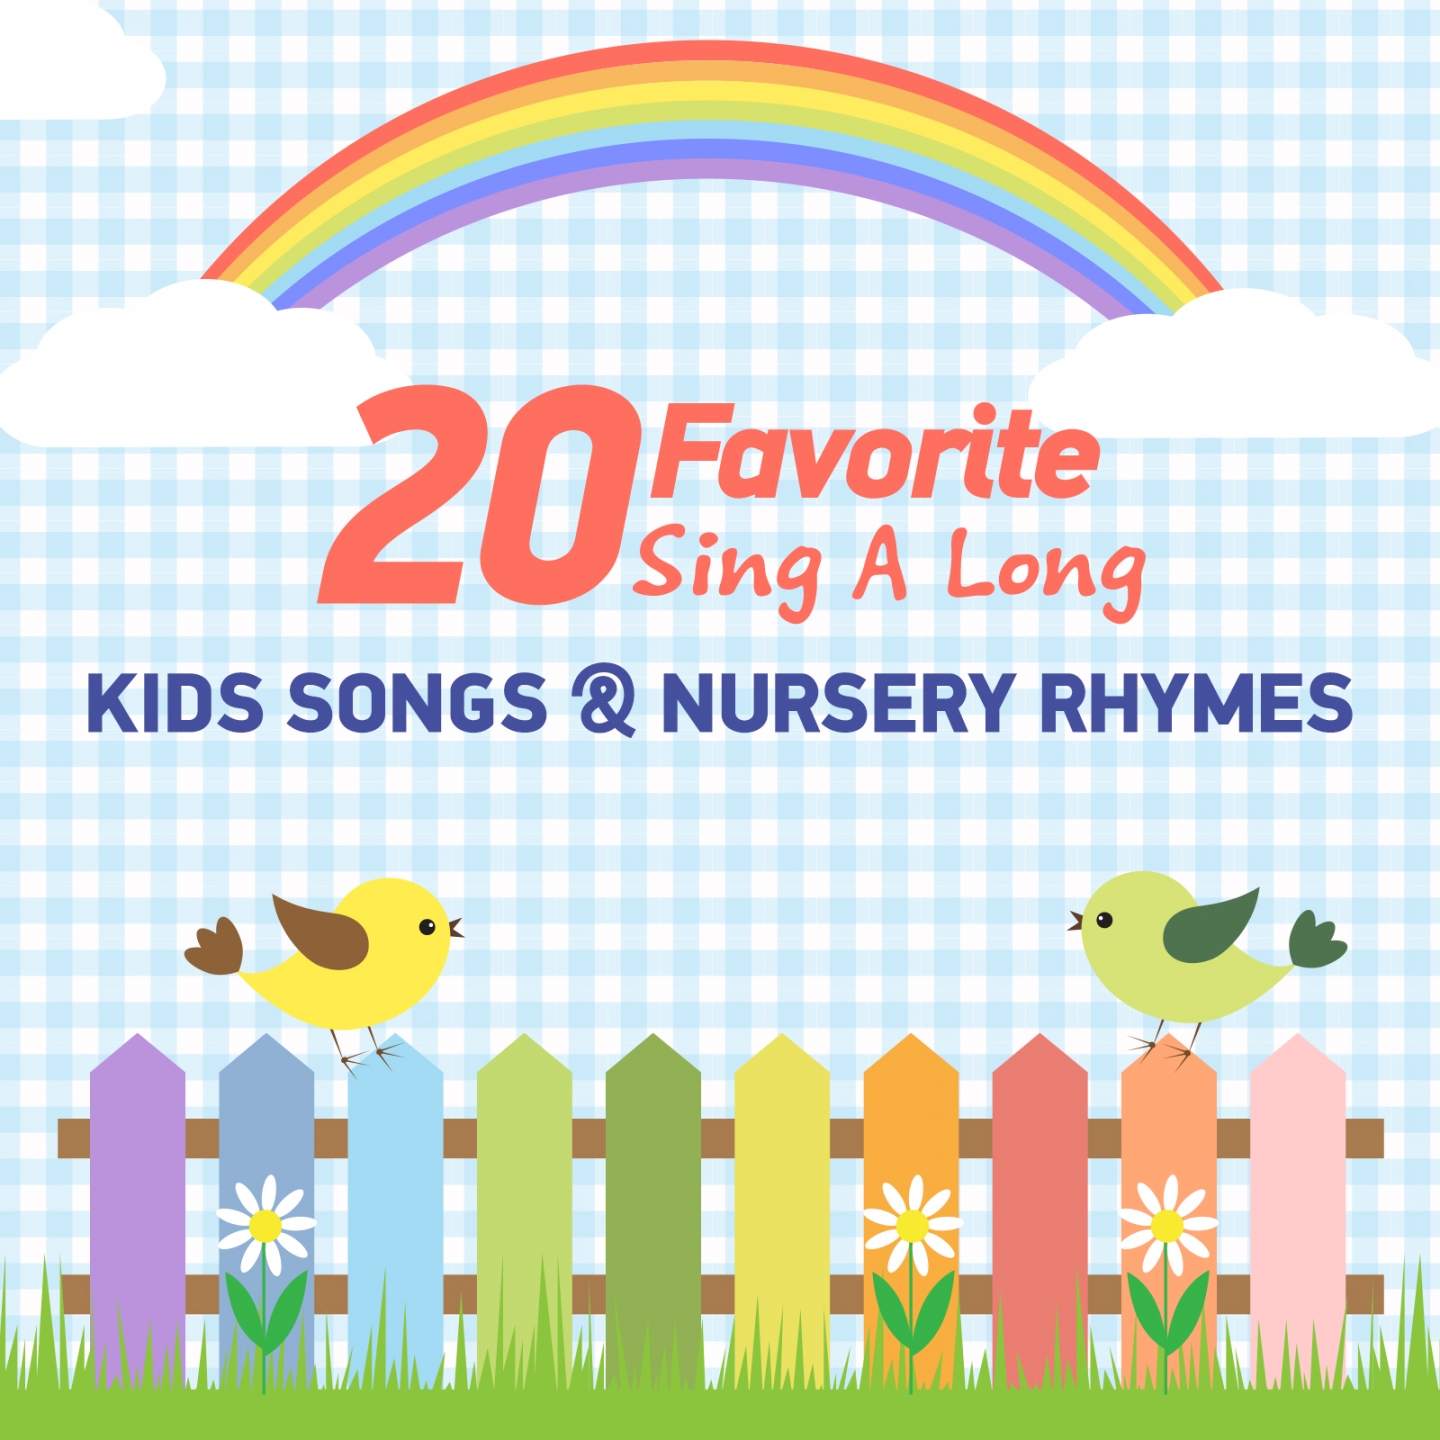 20 Favorite Sing a Long Kids Songs & Nursery Rhymes